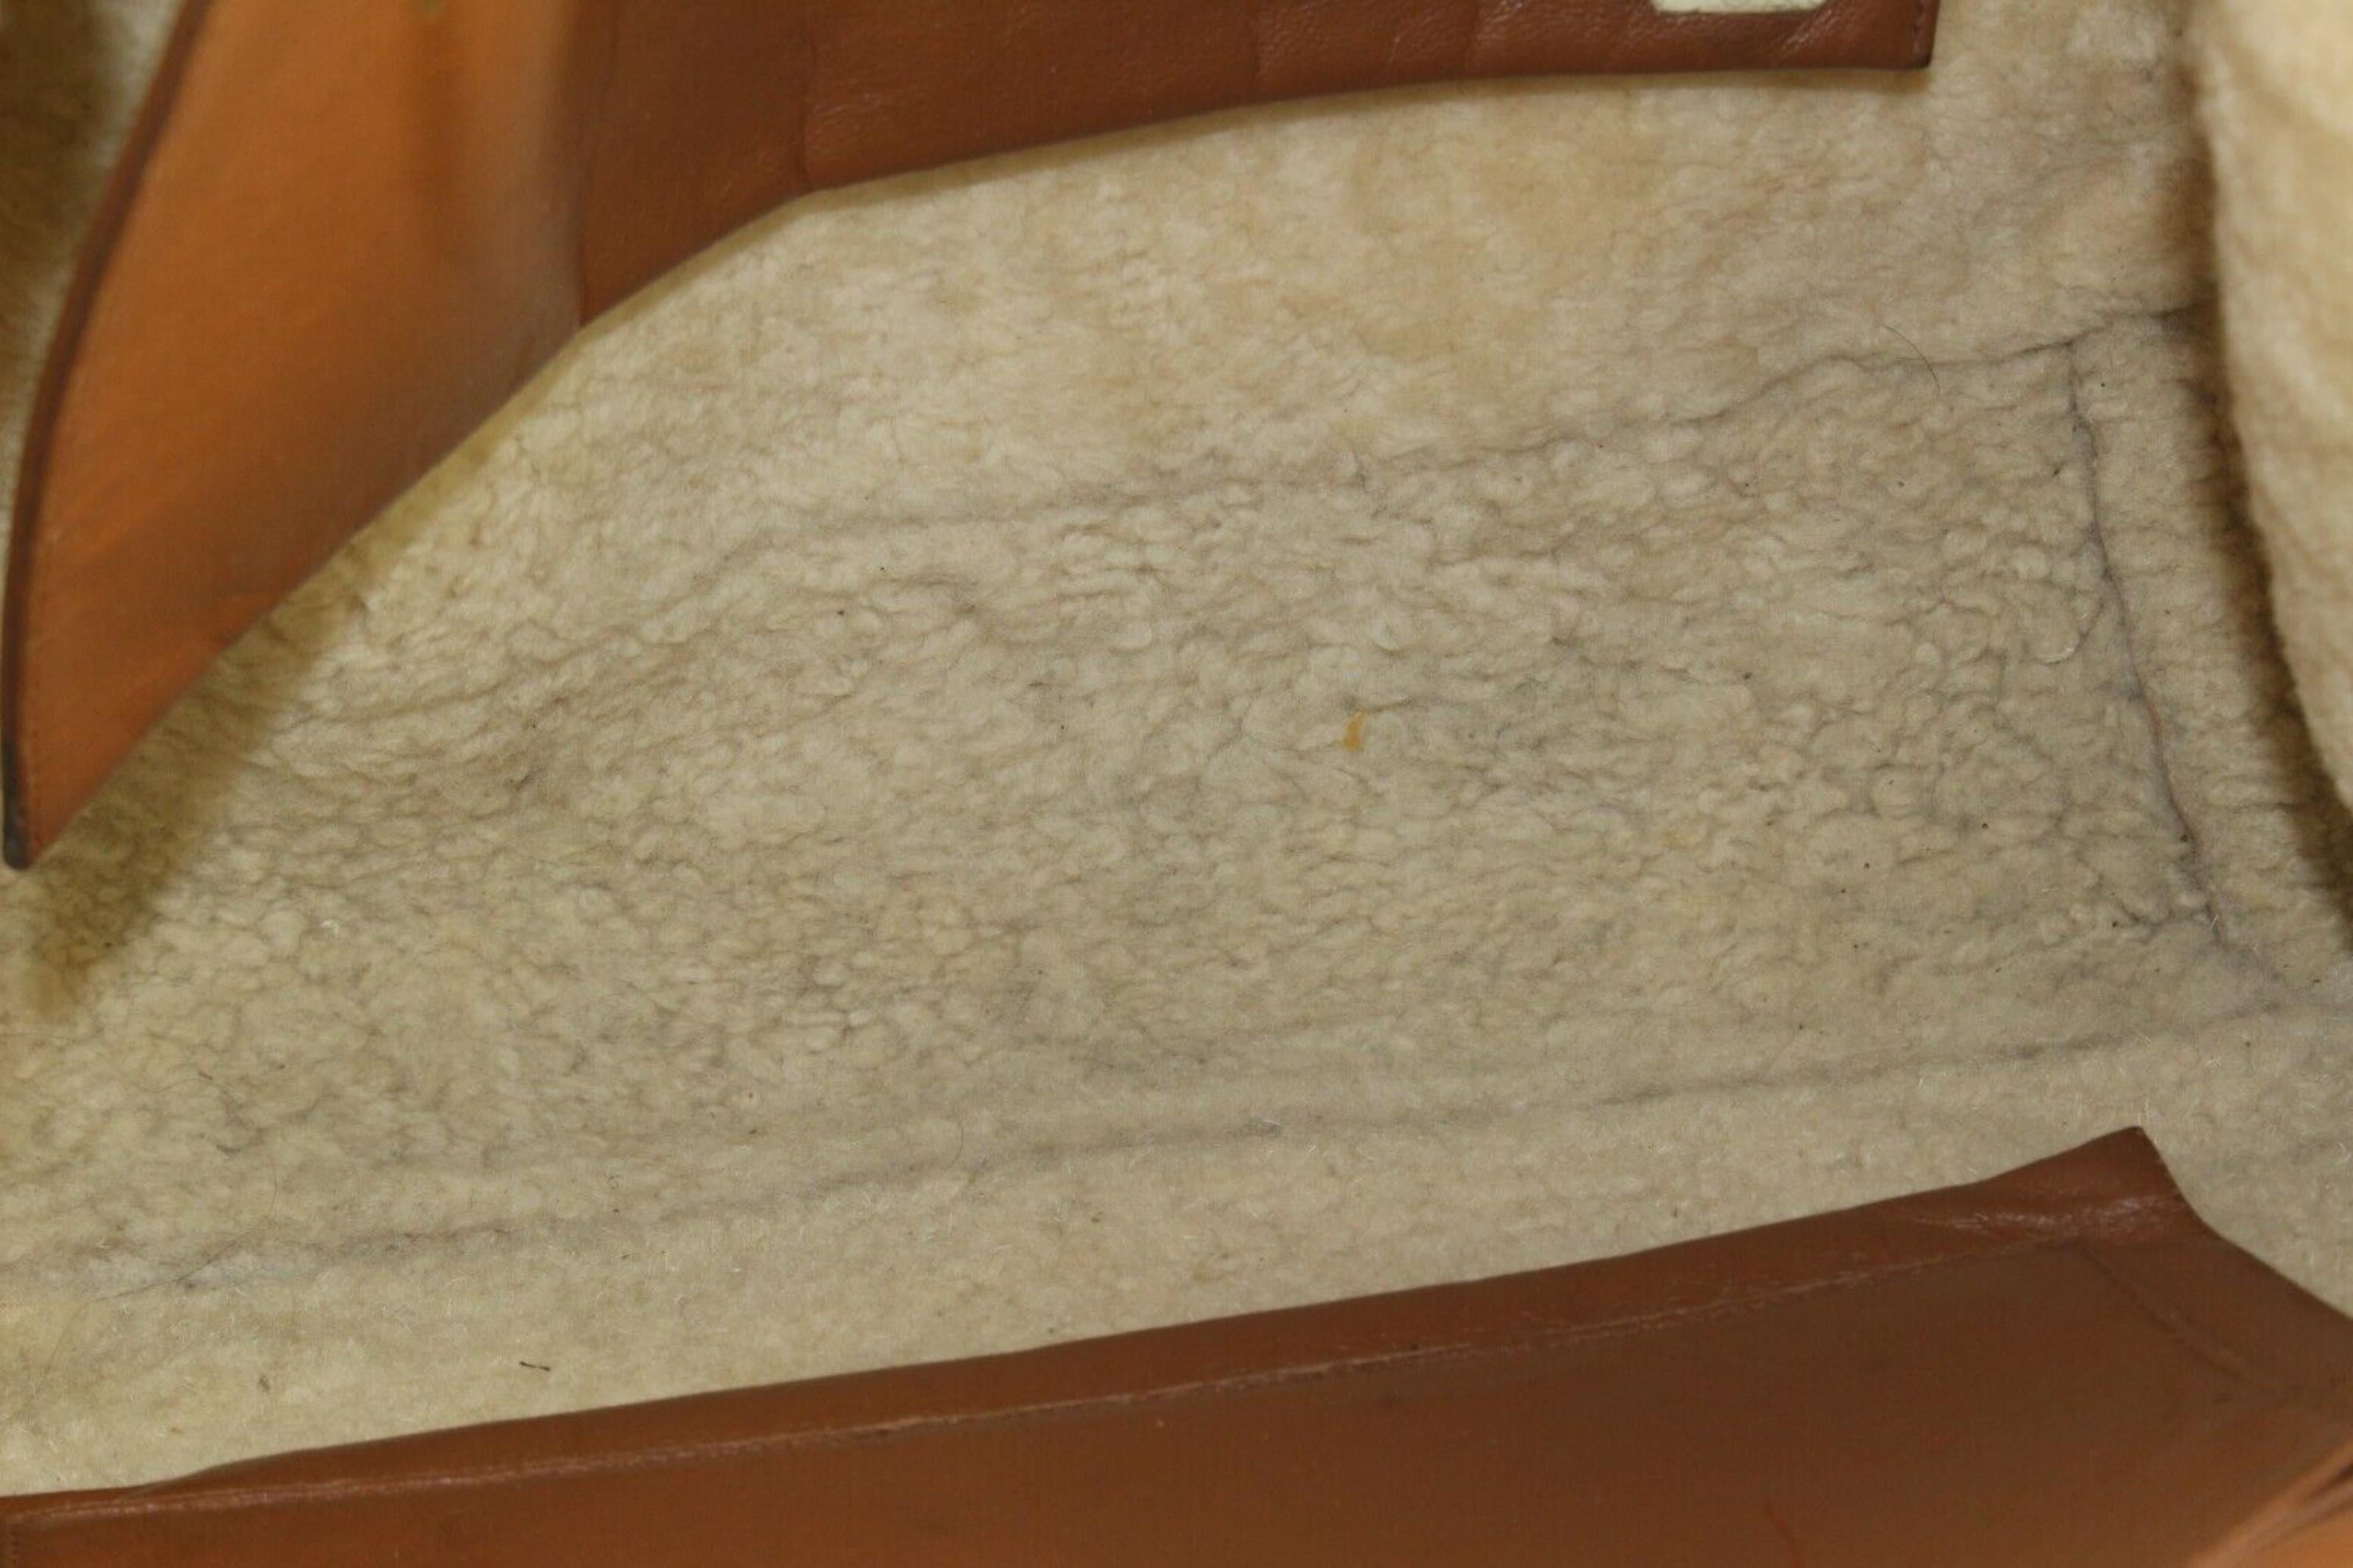 Chanel Tragetasche aus braunem Schafsleder mit Schafslederkette GHW 4CAS0419
Datum Code/Seriennummer: unleserlich 3588

Hergestellt in: Frankreich

Maße: Länge:  14